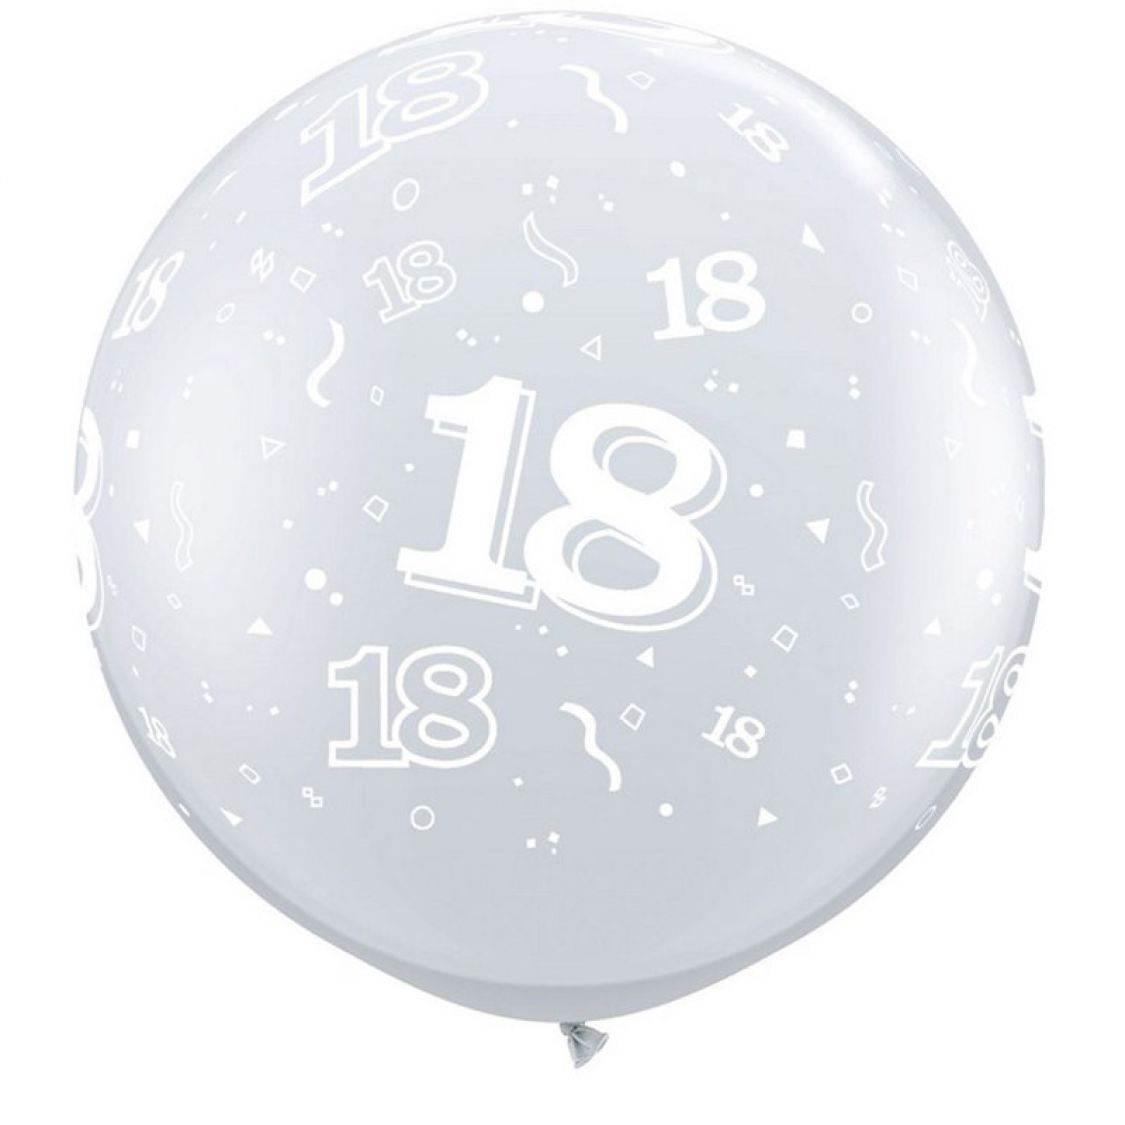 Ballon géant 18 ans qualatex transparent